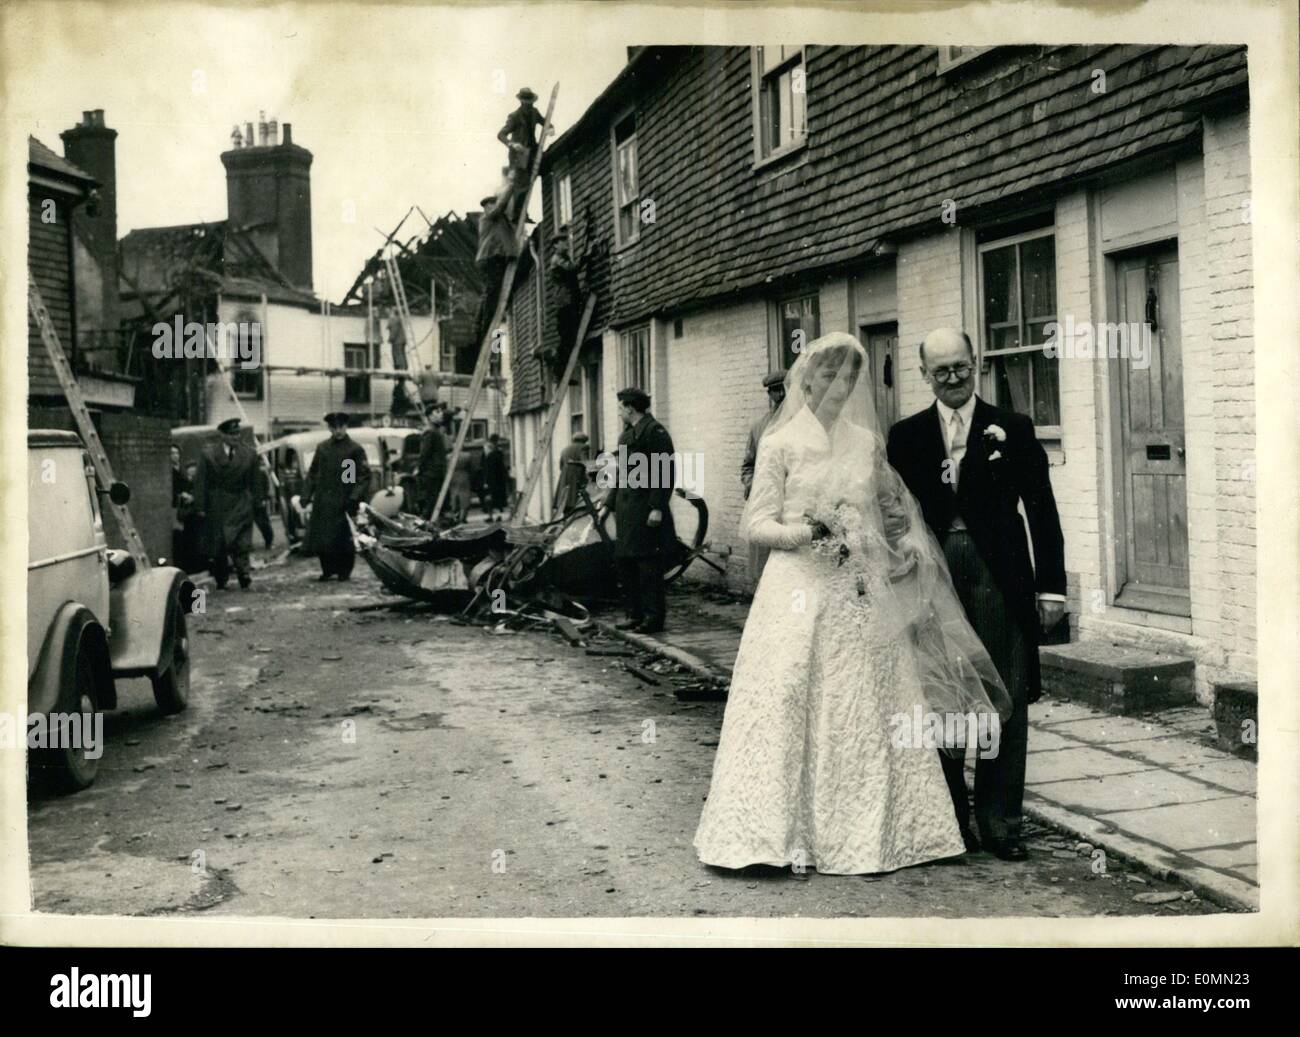 01 janvier 1956 - MARIAGE À L'ÉGLISE DU VILLAGE - SCÈNE DE L'accident.. Mariée accompagné à travers épave par son oncle.. Le mariage a eu lieu cet après-midi à Wadhurst, Sussex, église du village de 23 ans Miss Peggy Hazelden, de Hawkhurst et M. John Jackson de Wadhurst.. Les invités ont eu à choisir leur chemin à travers les décombres de bâtiments détruits - pour fut la scène de Wadhurst hier's accident d'un de la R.A.F. Meteor - dans laquelle deux civils et deux militaires ont perdu la vie.. La seule voiture admis dans le village a été celle de la mariée et le marié. Banque D'Images